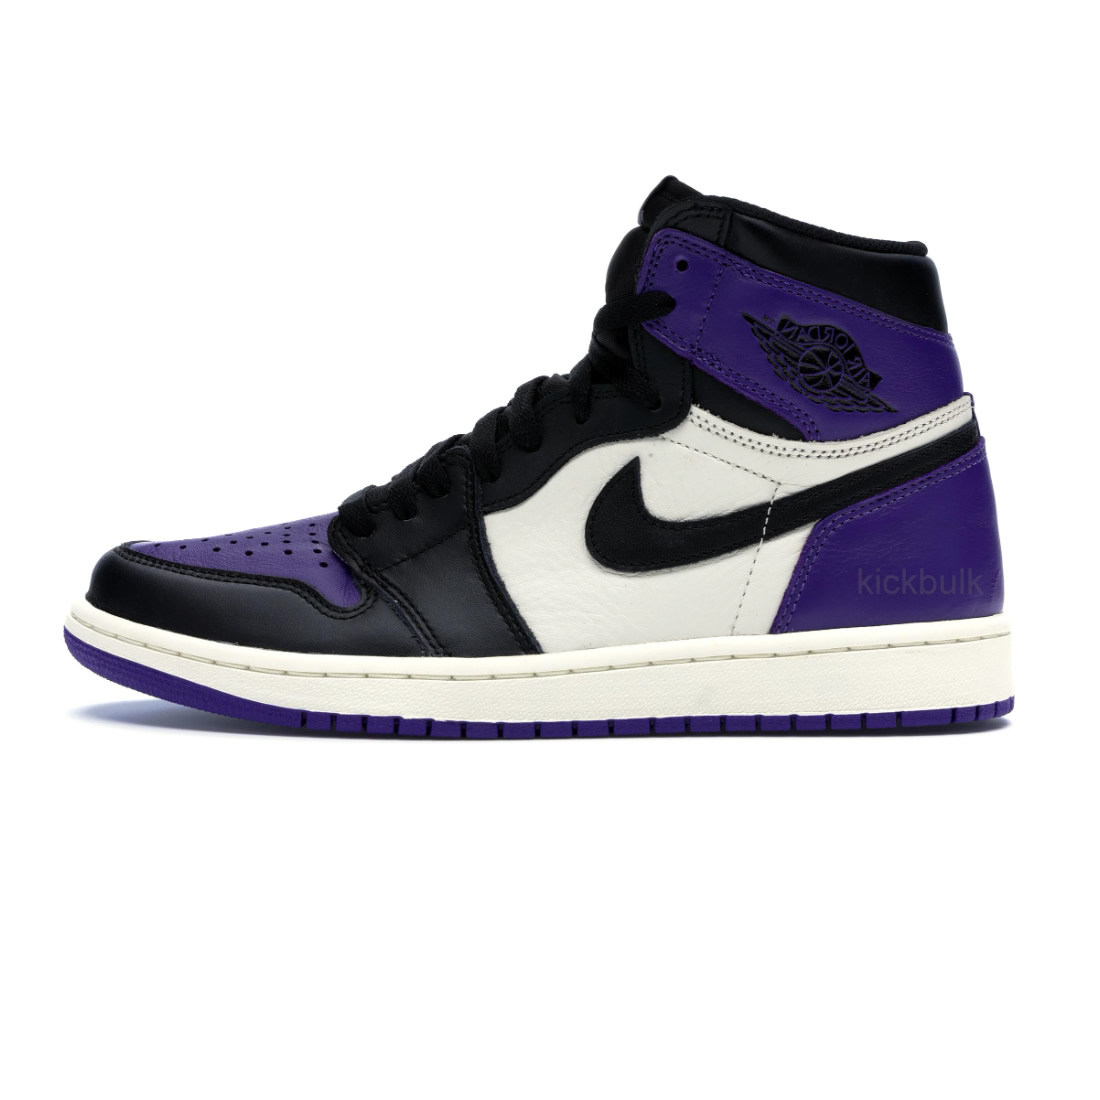 Nike Air Jordan 1 Og High Retro Court Purple 555088 501 1 - www.kickbulk.co